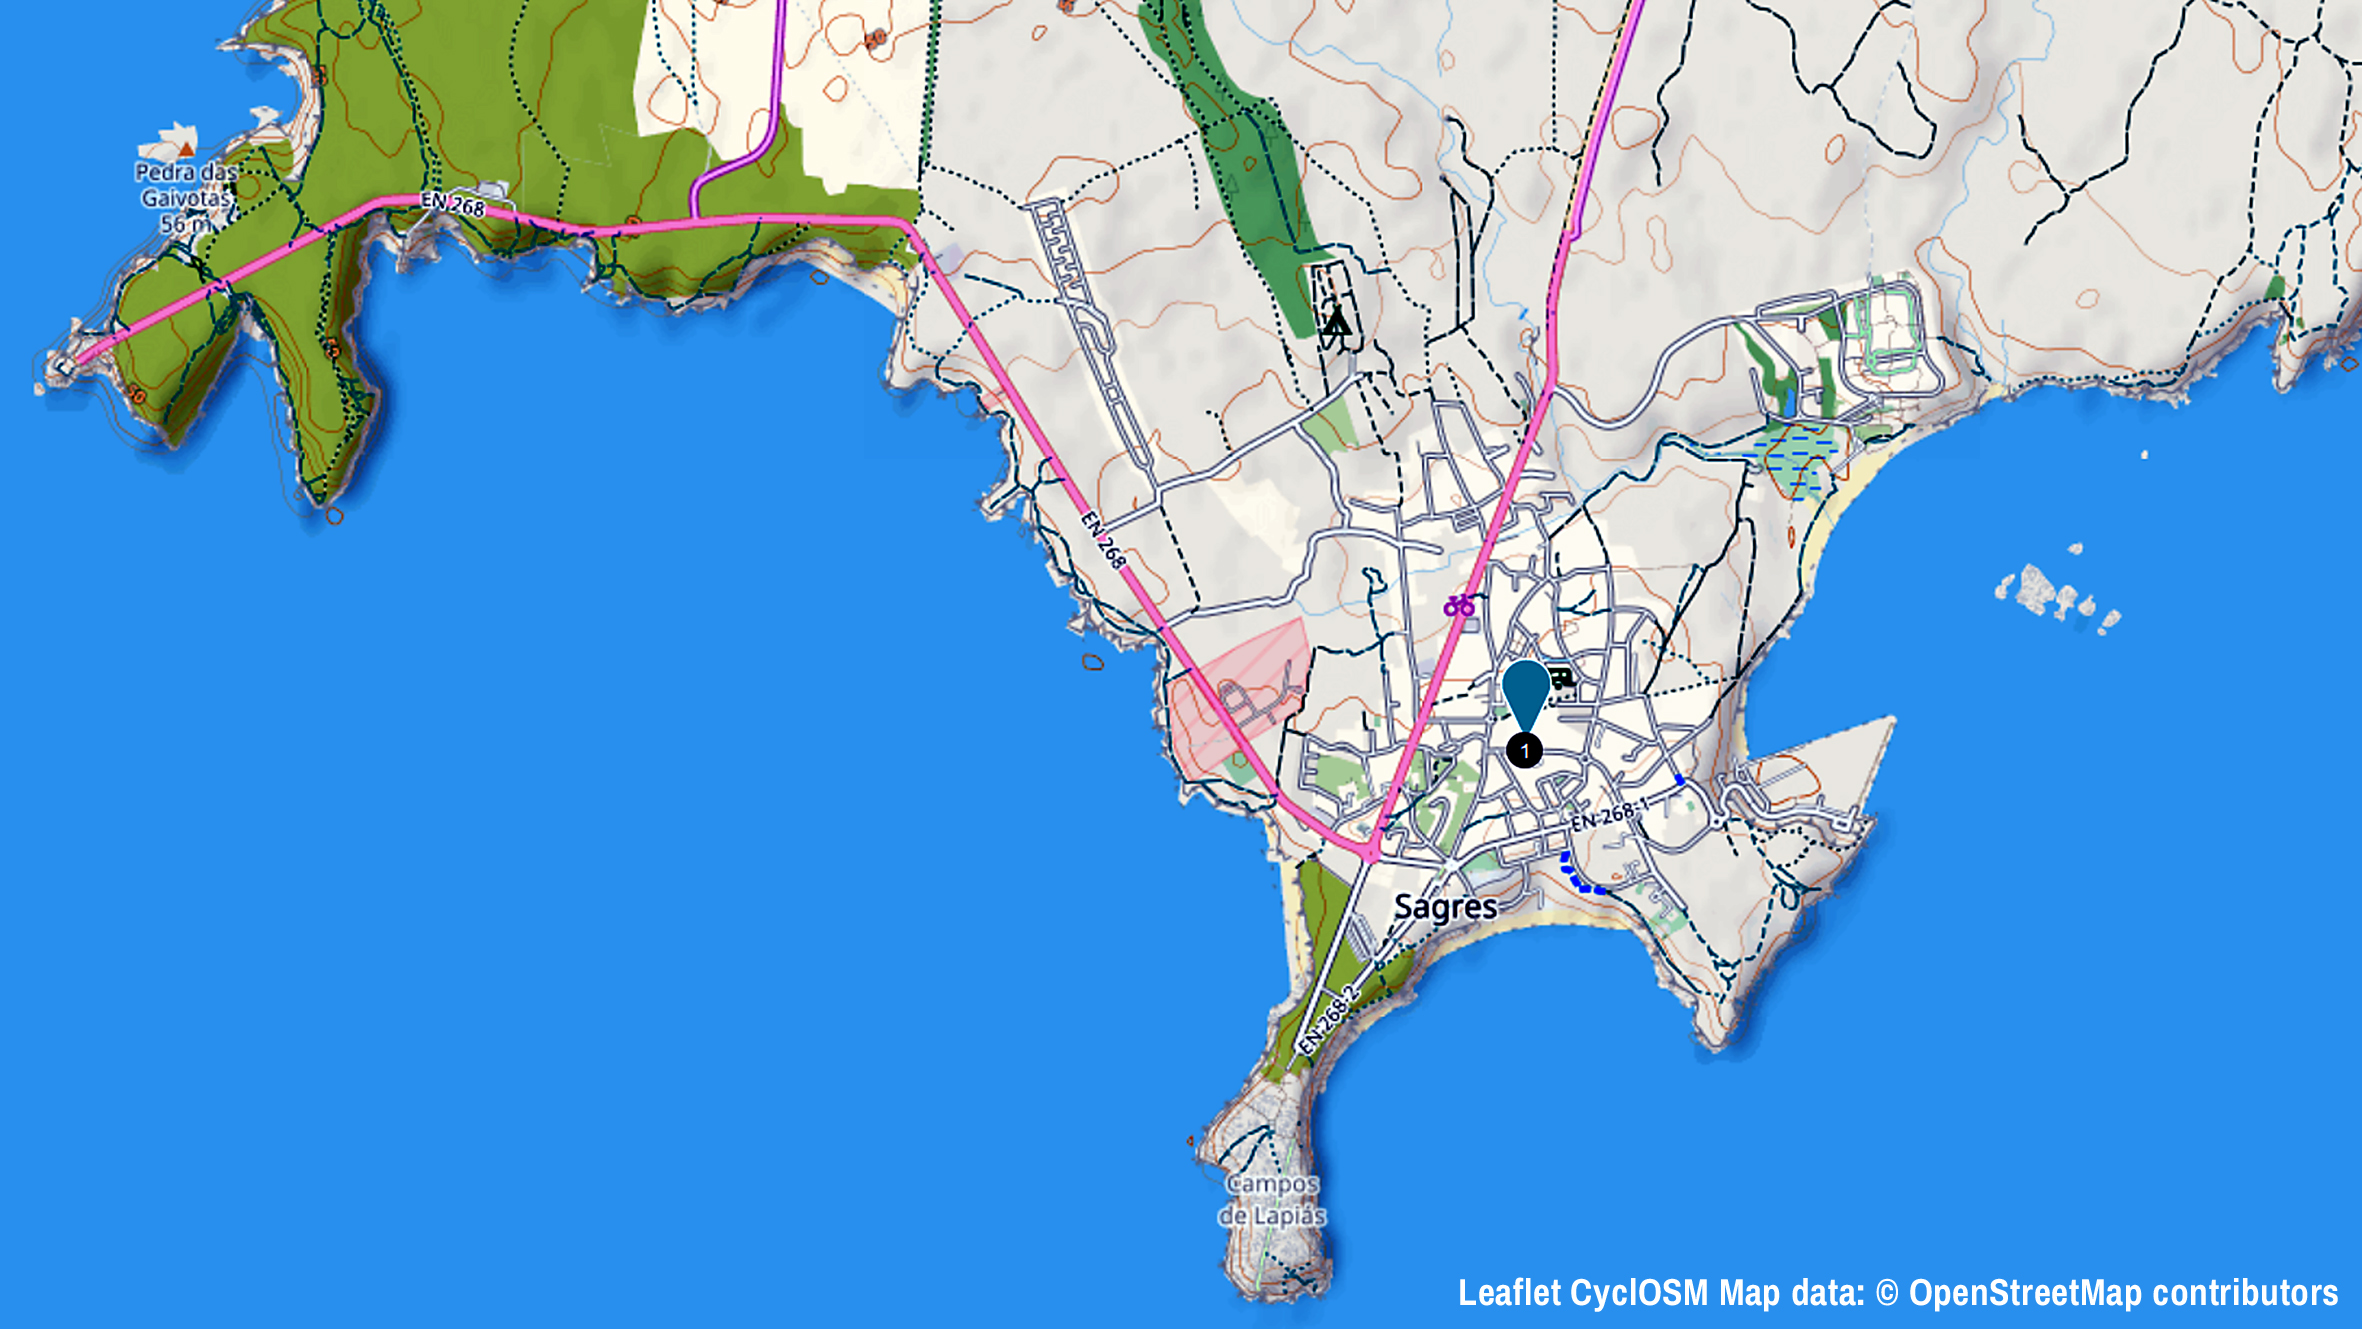 Der äußerste Südwesten Portugals mit Sagres (Bildmitte) und dem Cabo de São Vicente, das Kap des Heiligen Vinzenz am ENDE DER WELT (links im Bild). Bildquelle: Leaflet CyclOSM Map data: © OpenStreetMap contributors